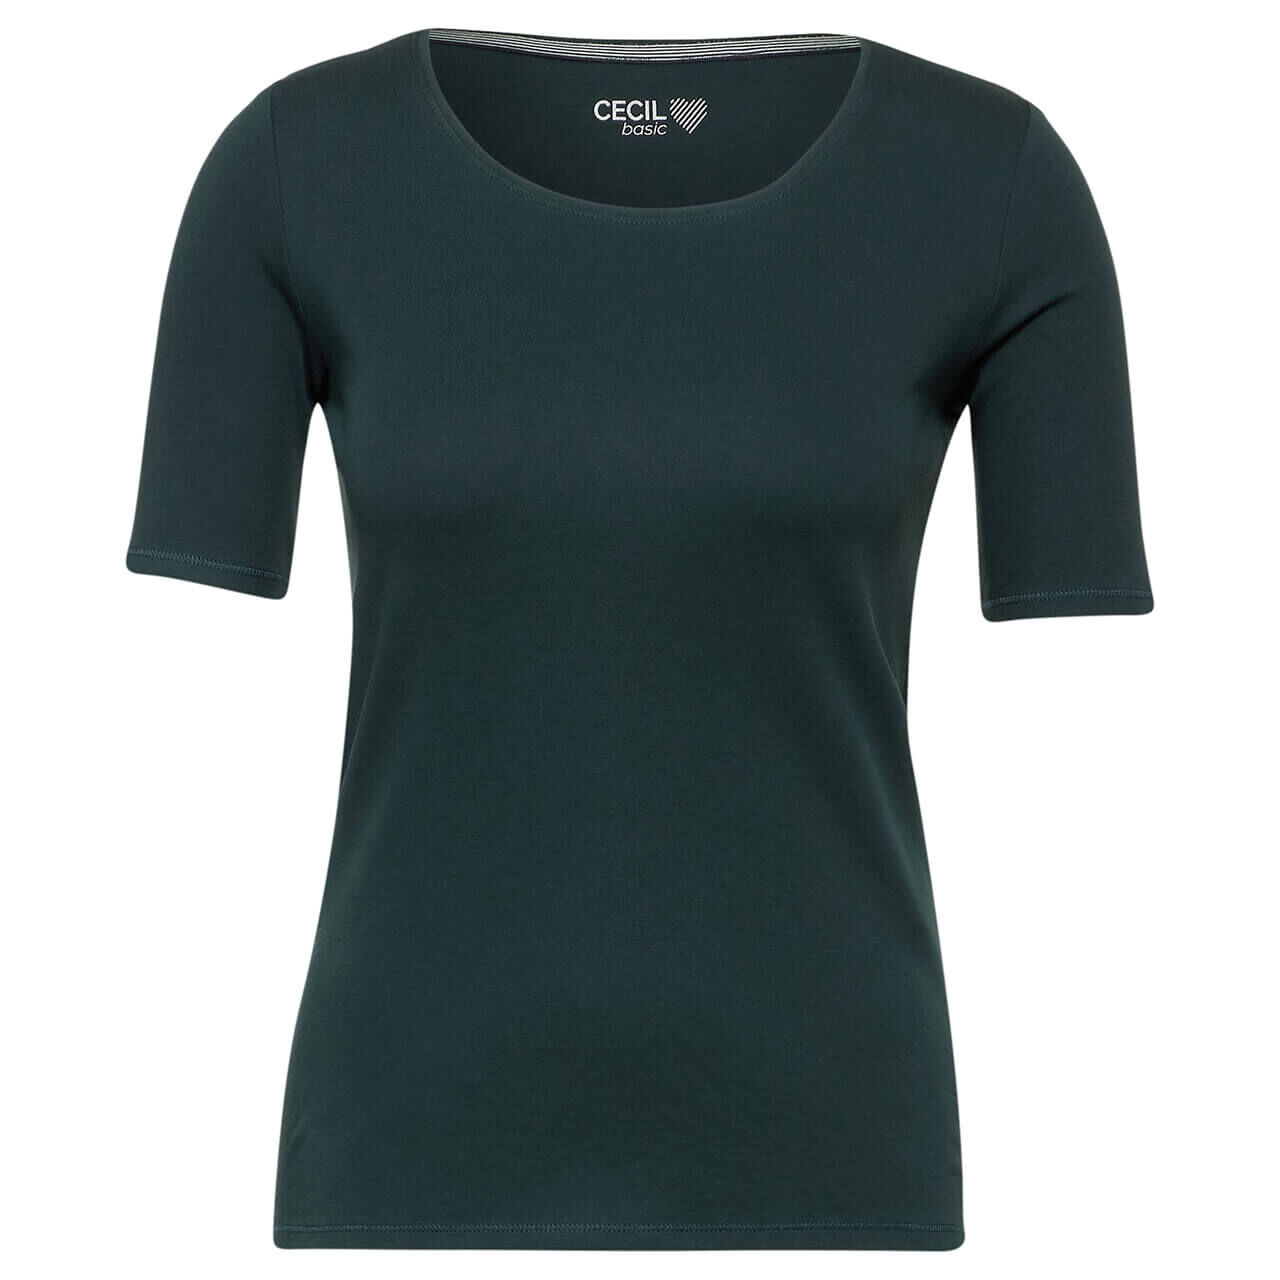 Cecil Damen T-Shirt Lena fir green